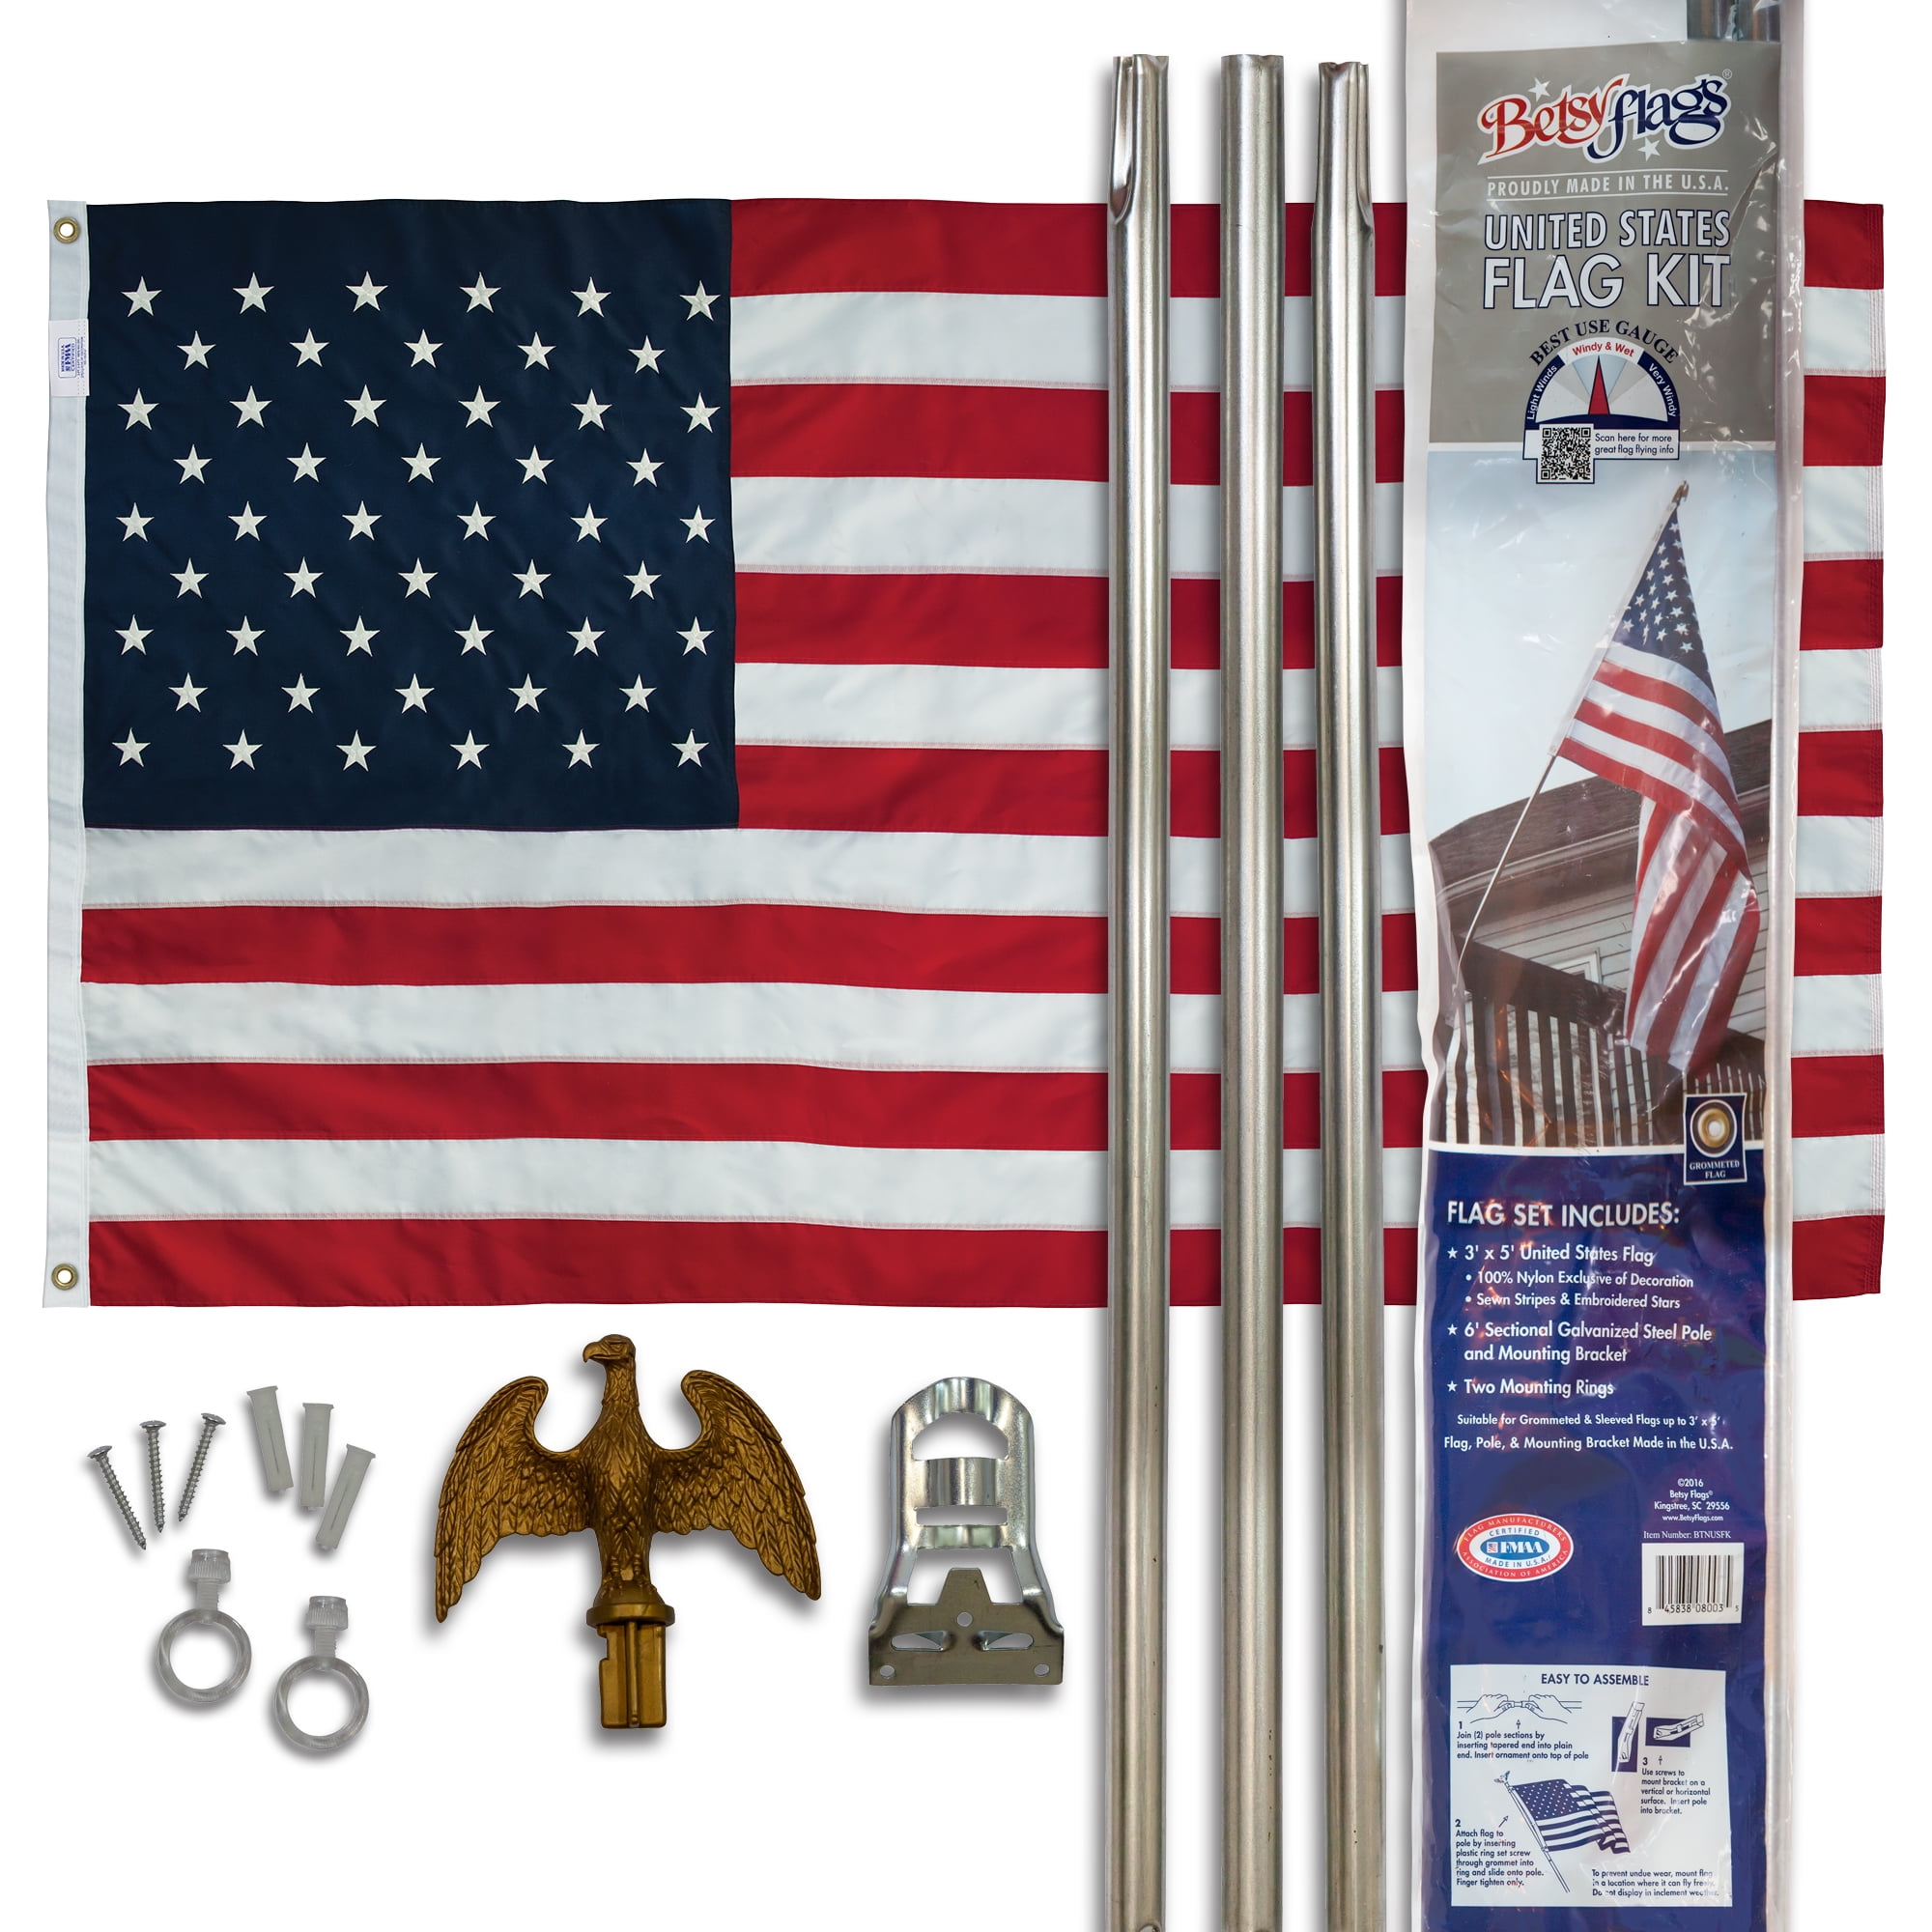 Appliance Sale Quantity 4 Super Flag & Pole Kits